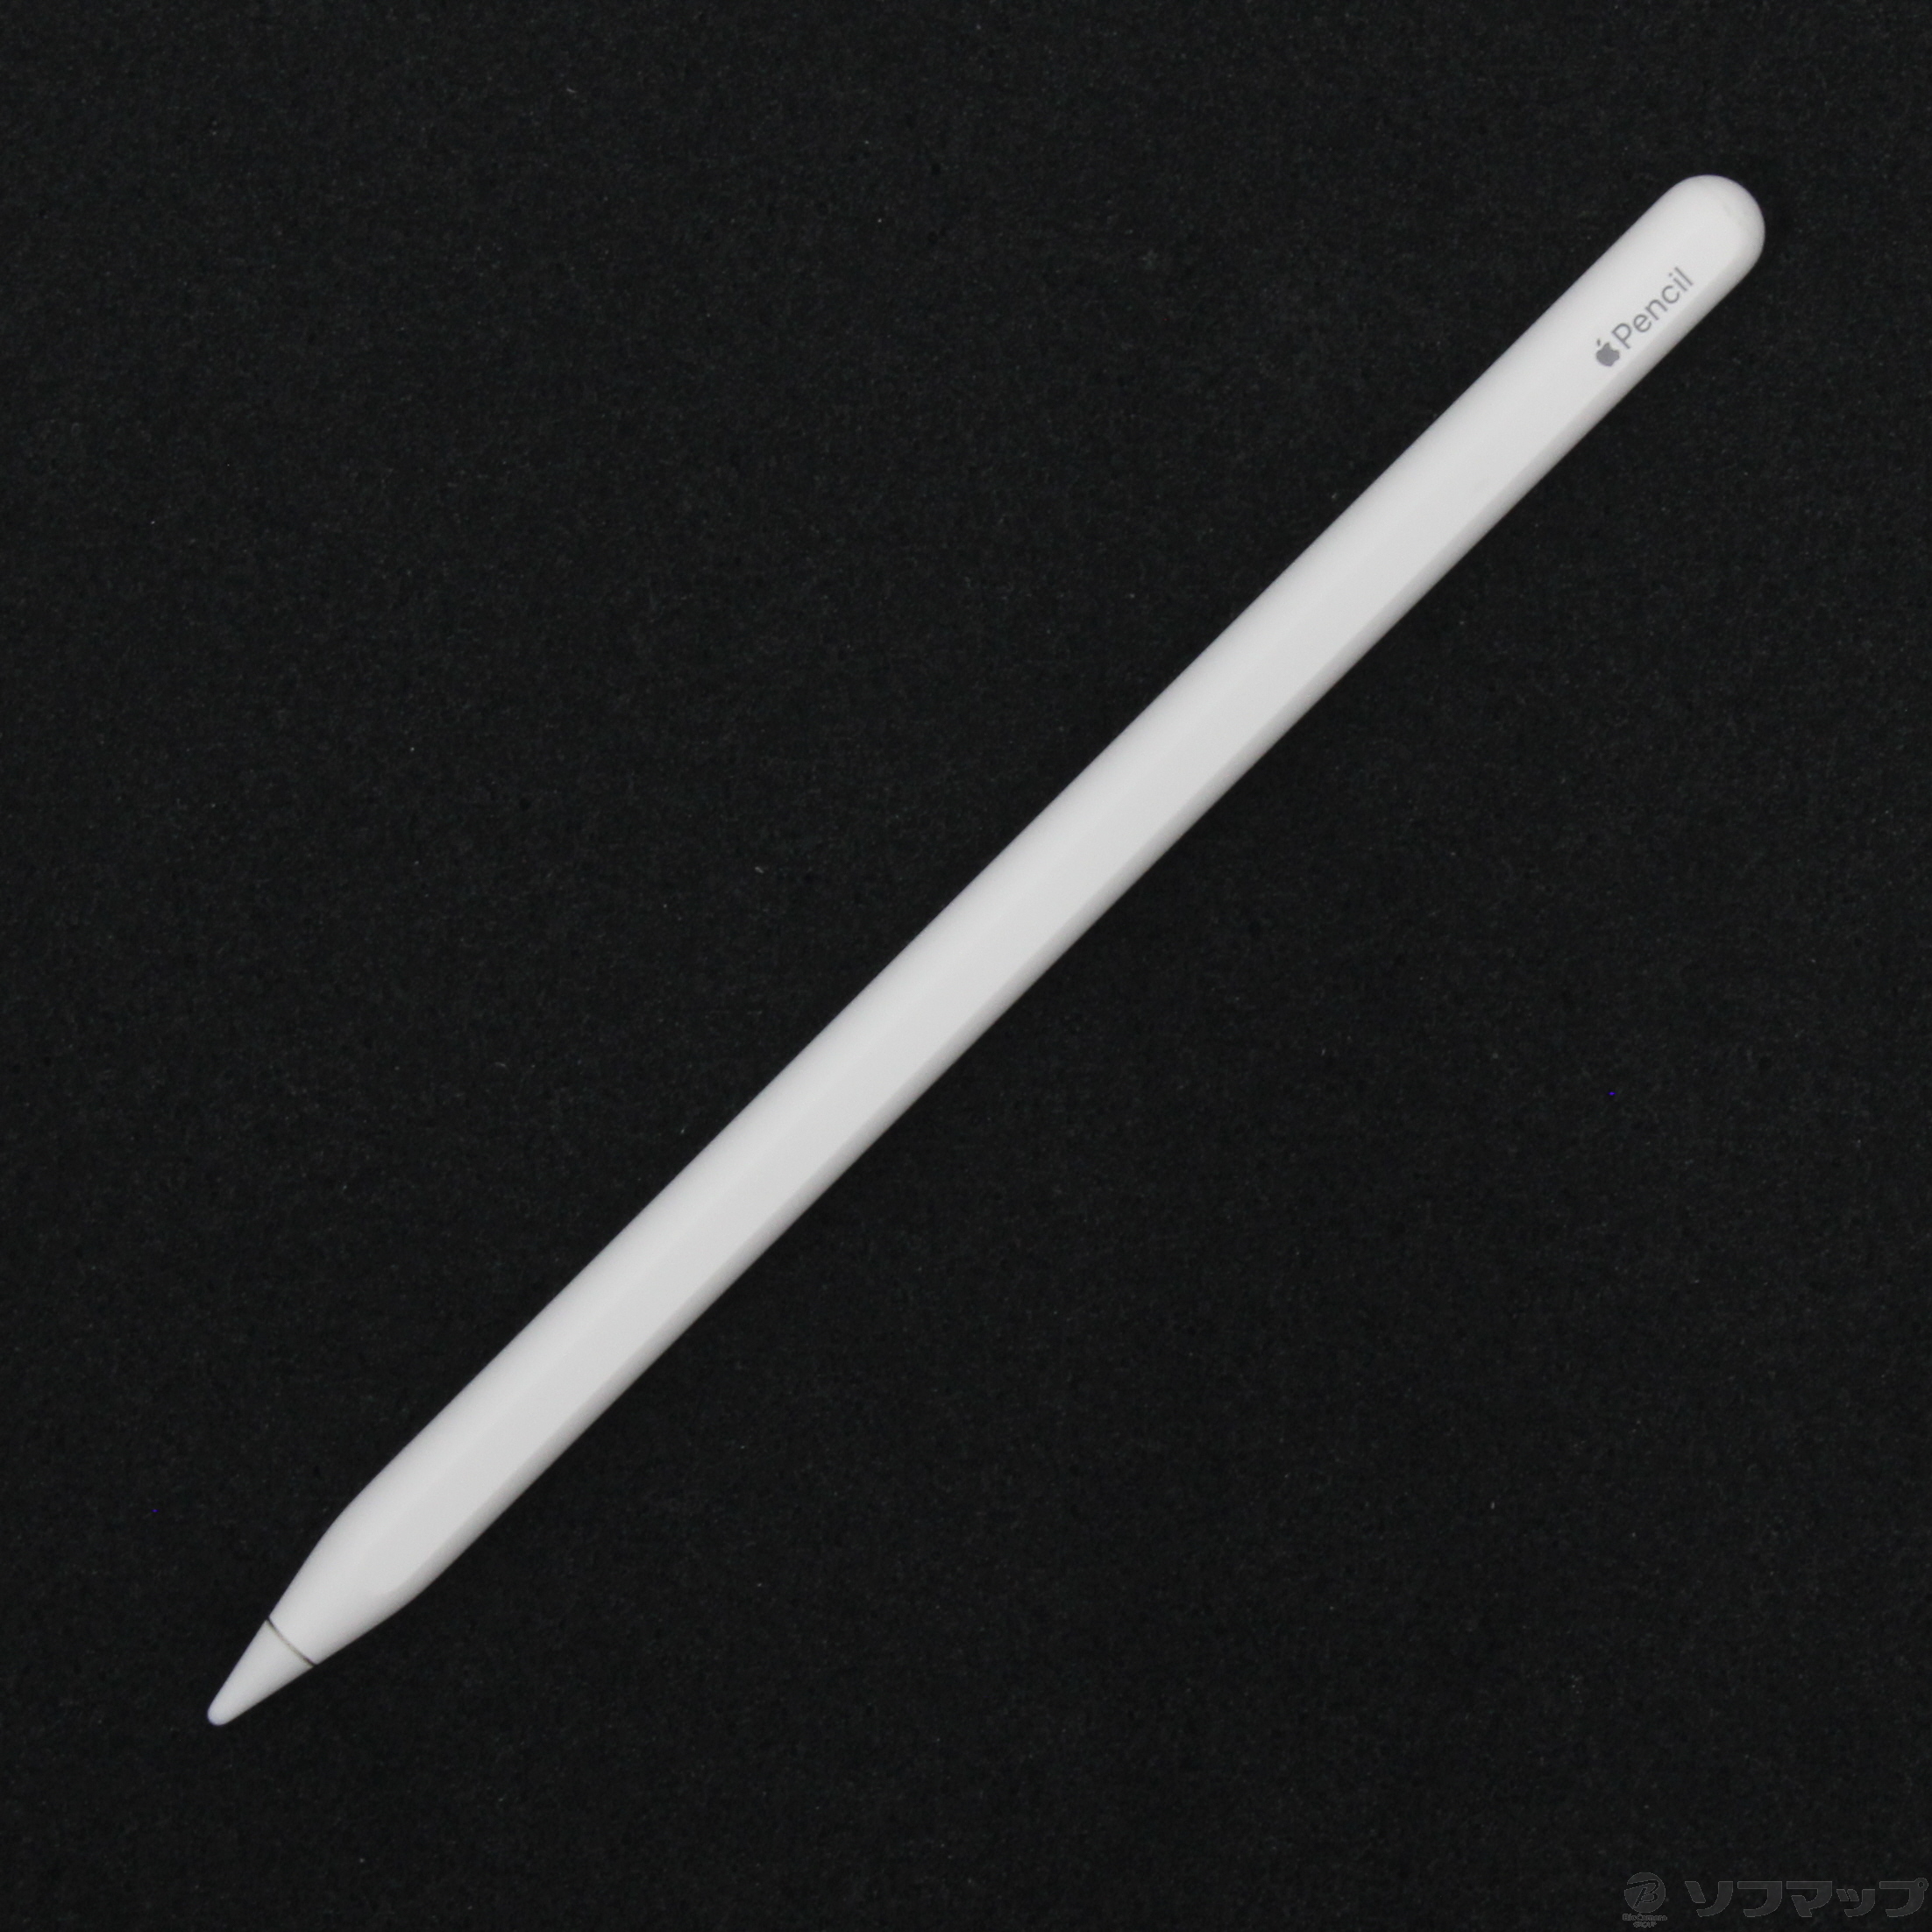 【新品再入荷】【美品】APPLE pencil 第2世代 MU8F2J/A iPadアクセサリー